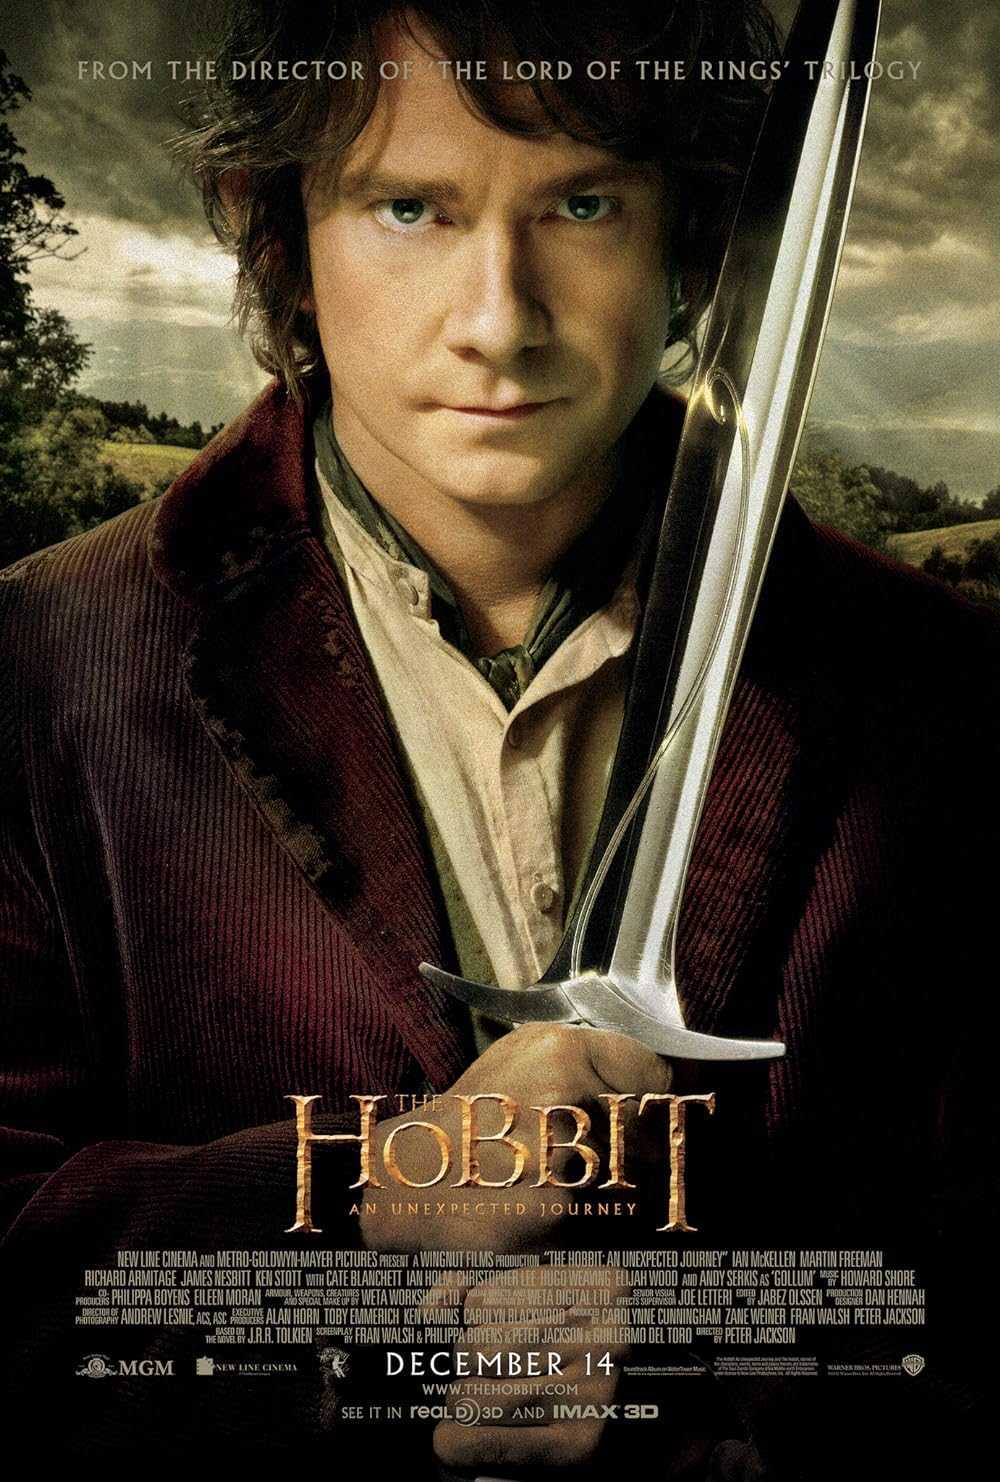 فیلم هابیت ۱ سفری غیر منتظره The Hobbit: An Unexpected Journey 2012 دانلود و تماشای آنلاین